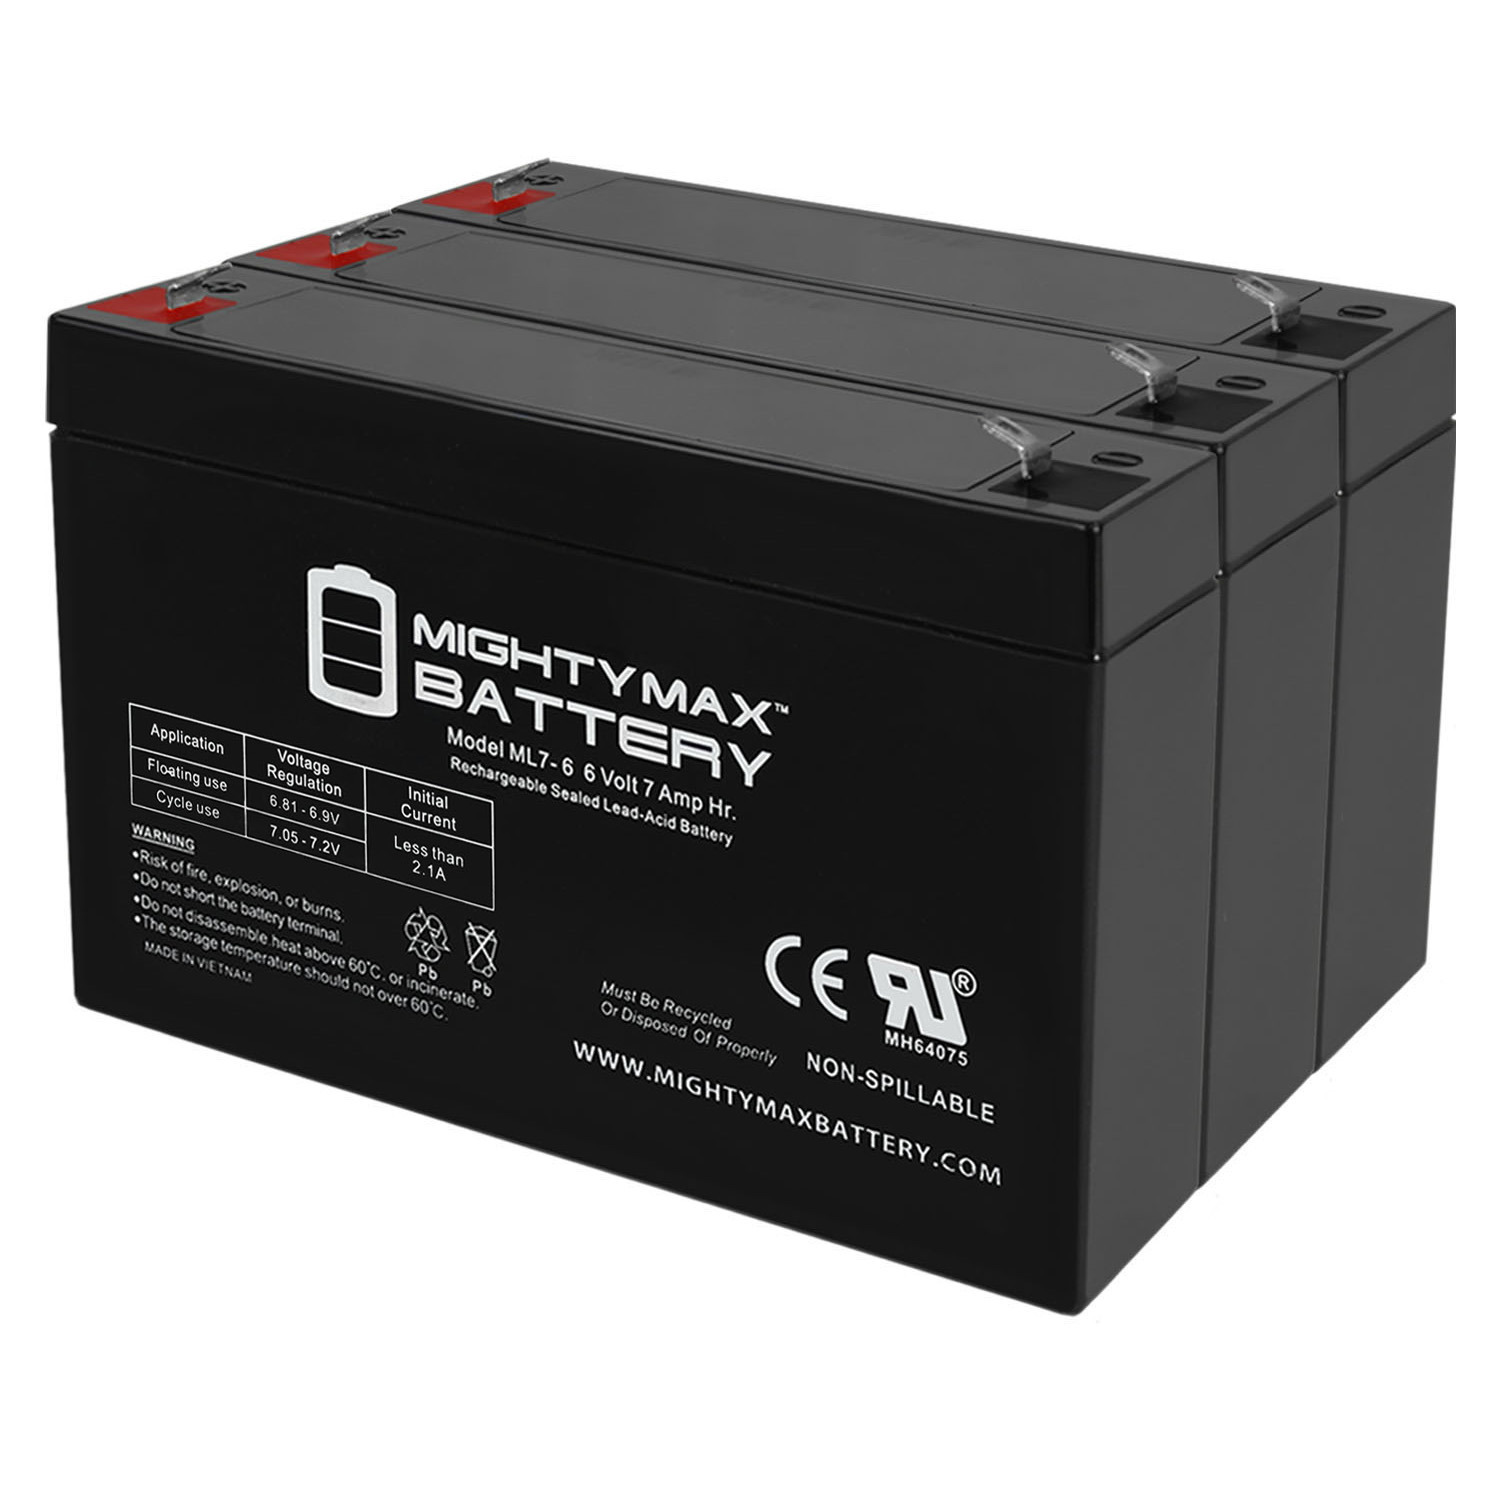 6V 7Ah UPS Battery for Hewlett Packard M1701AXL PAGEWRITER EKG - 3 Pack